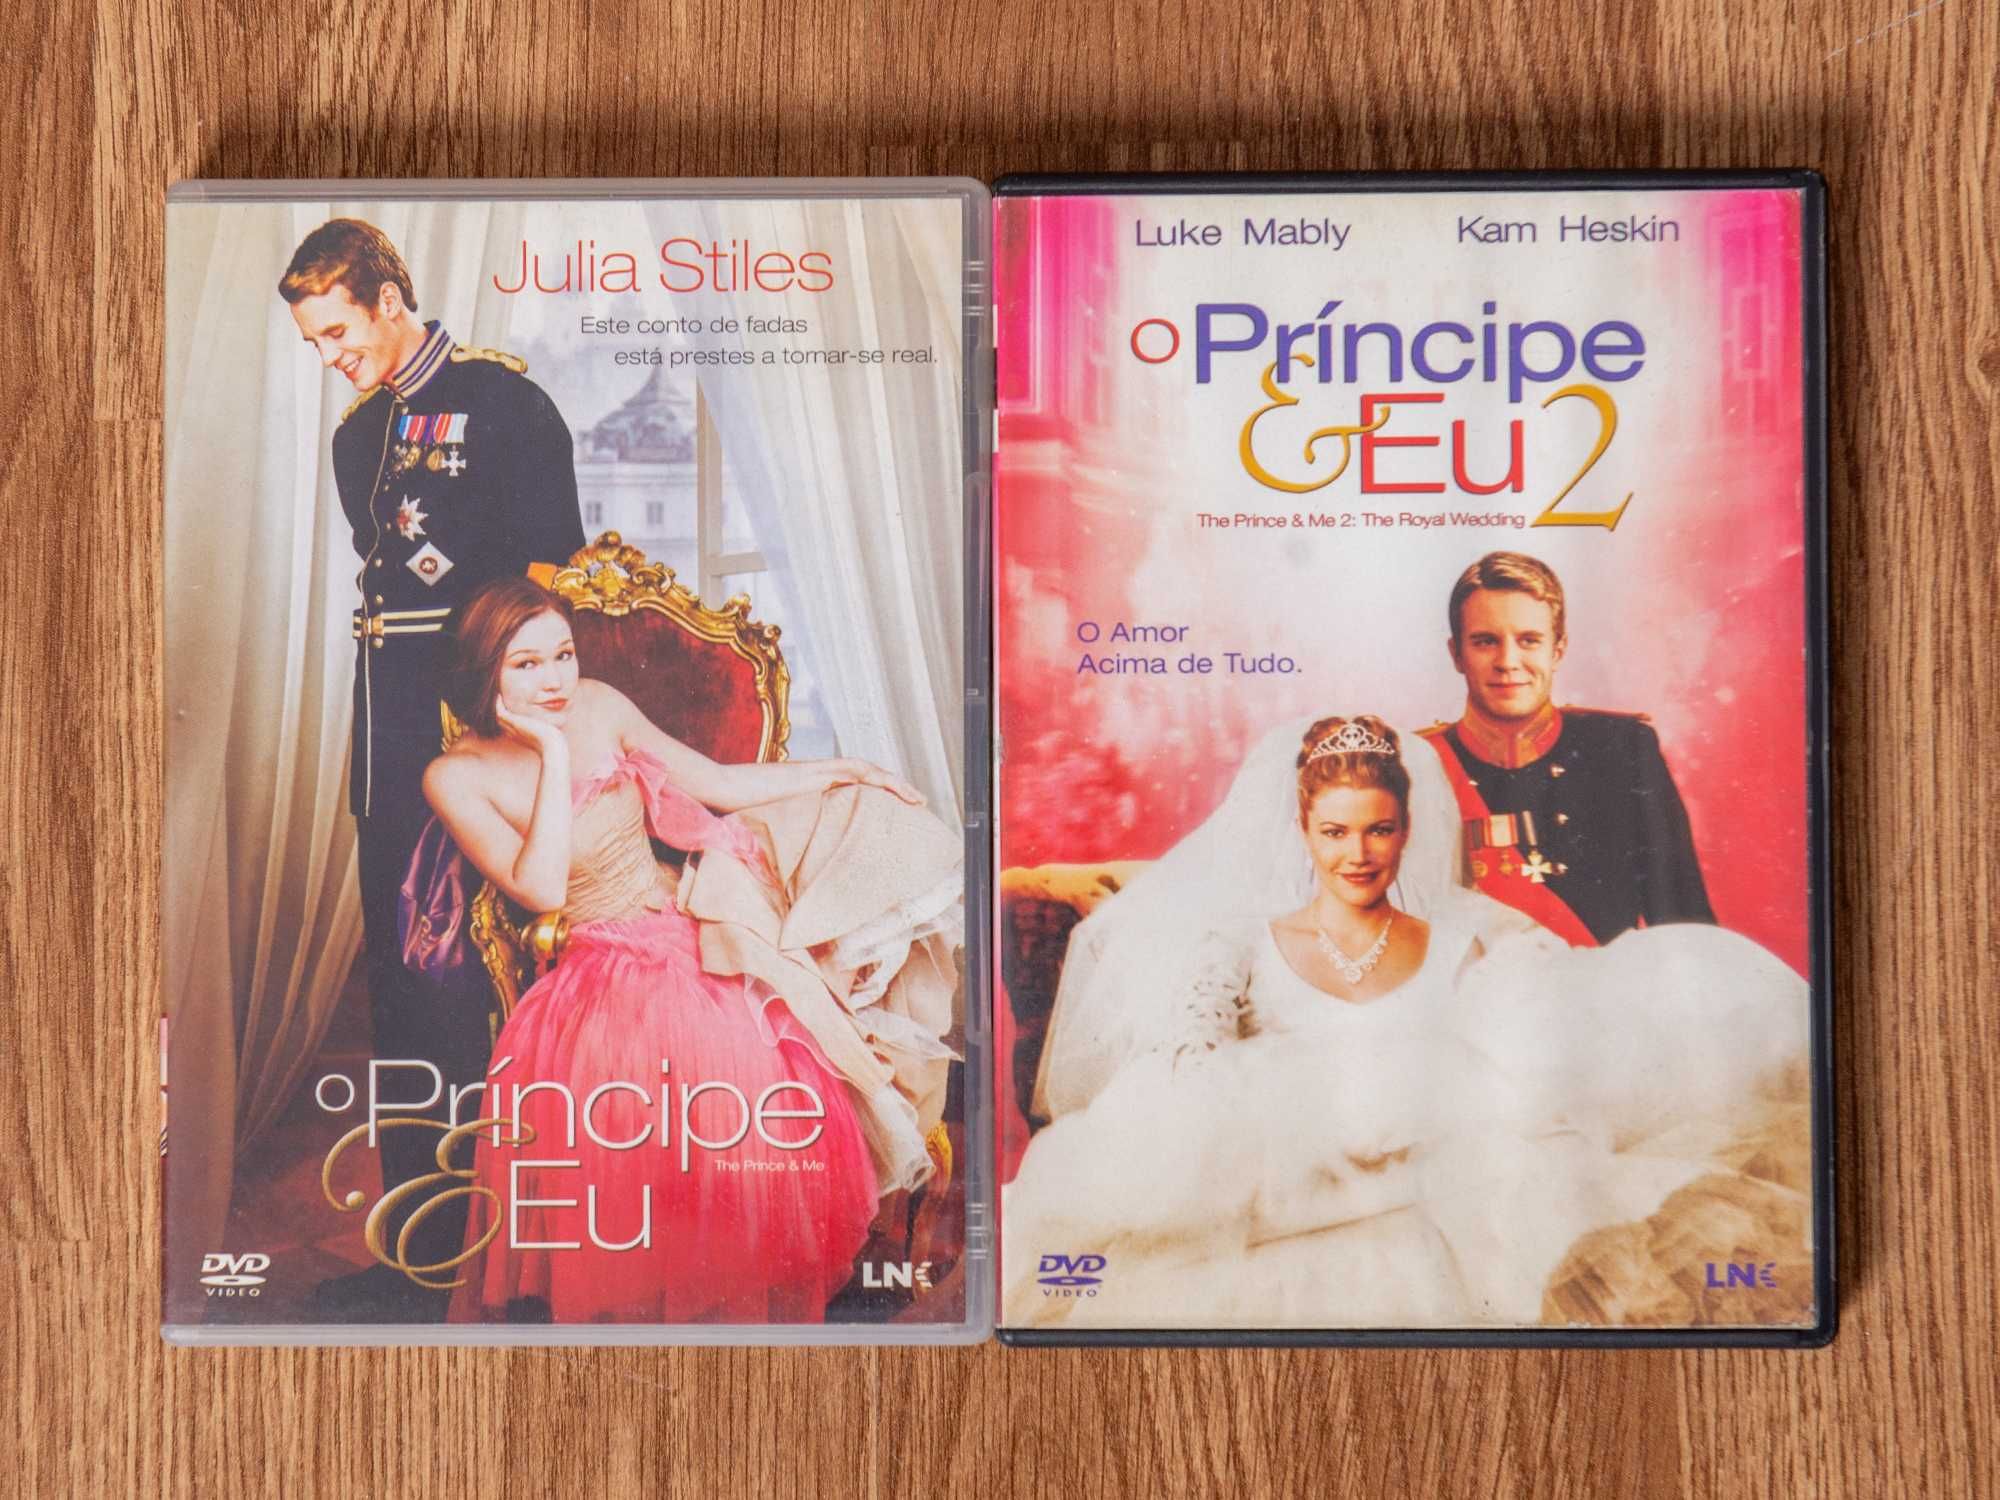 O Príncipe e Eu DVD